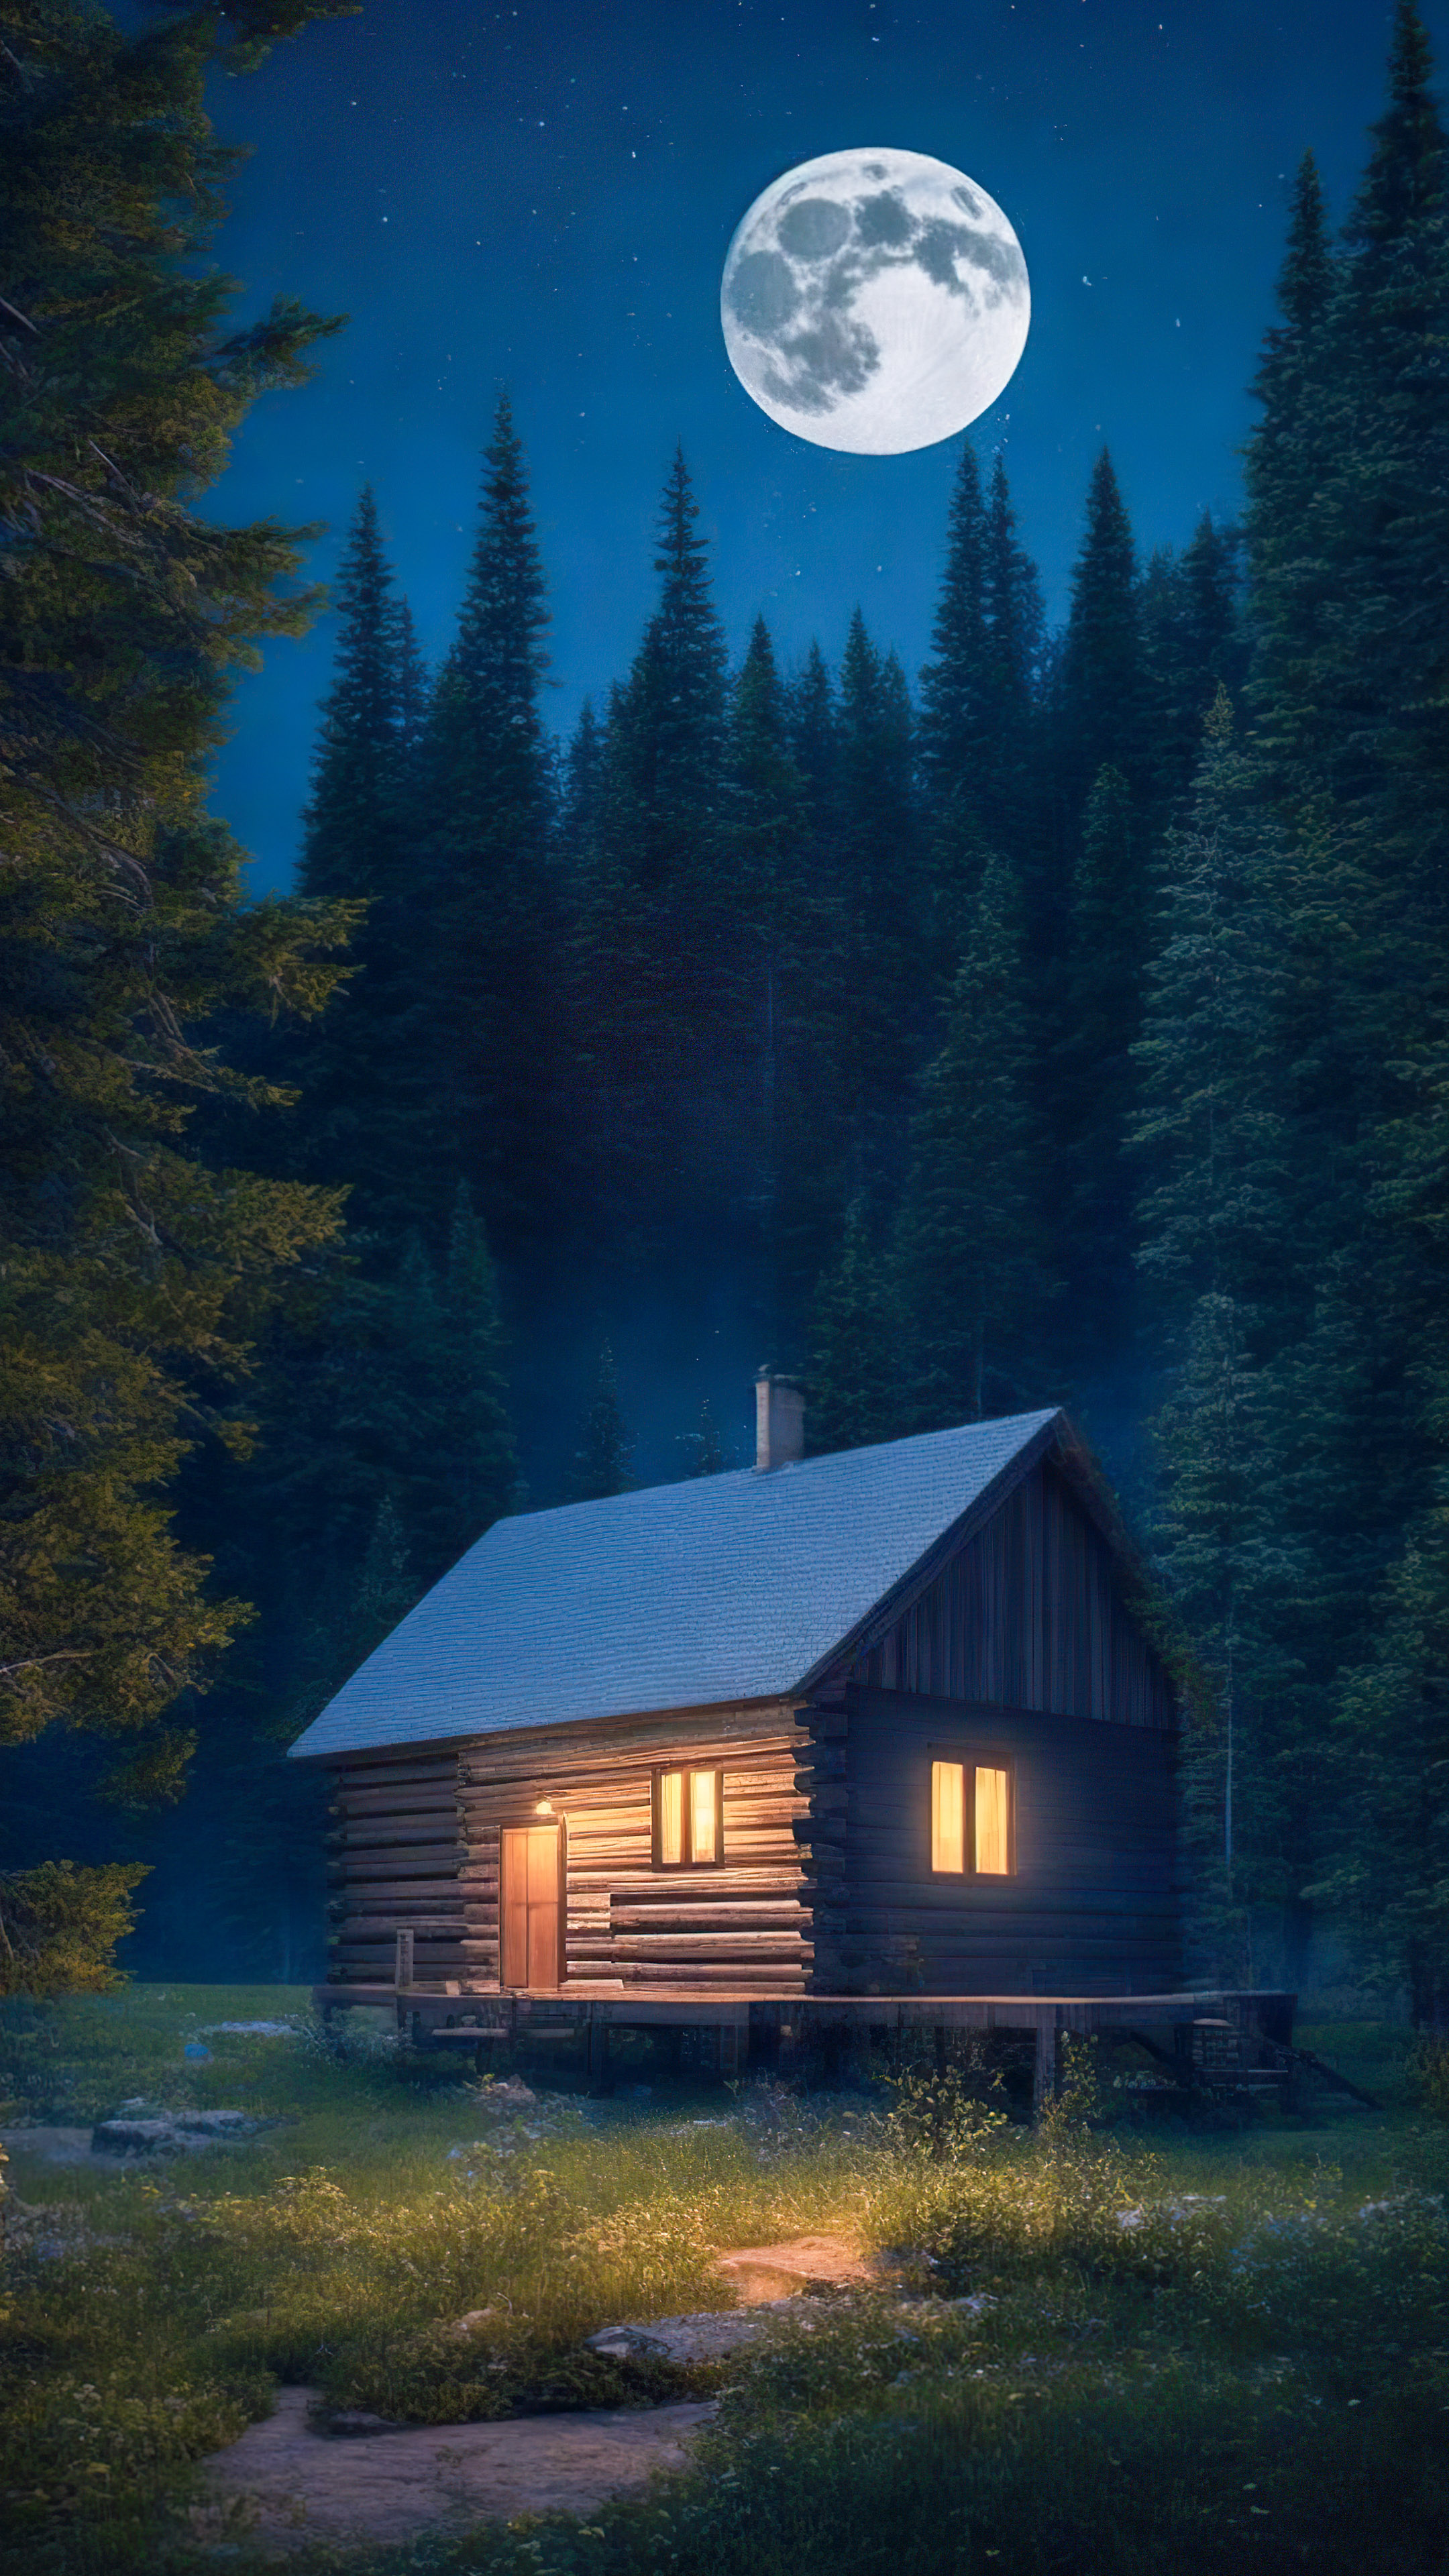 Ornez votre téléphone avec notre fond d'écran de ciel nocturne, présentant une cabane douillette nichée parmi les pins, baignée par la douce lumière d'une pleine lune.